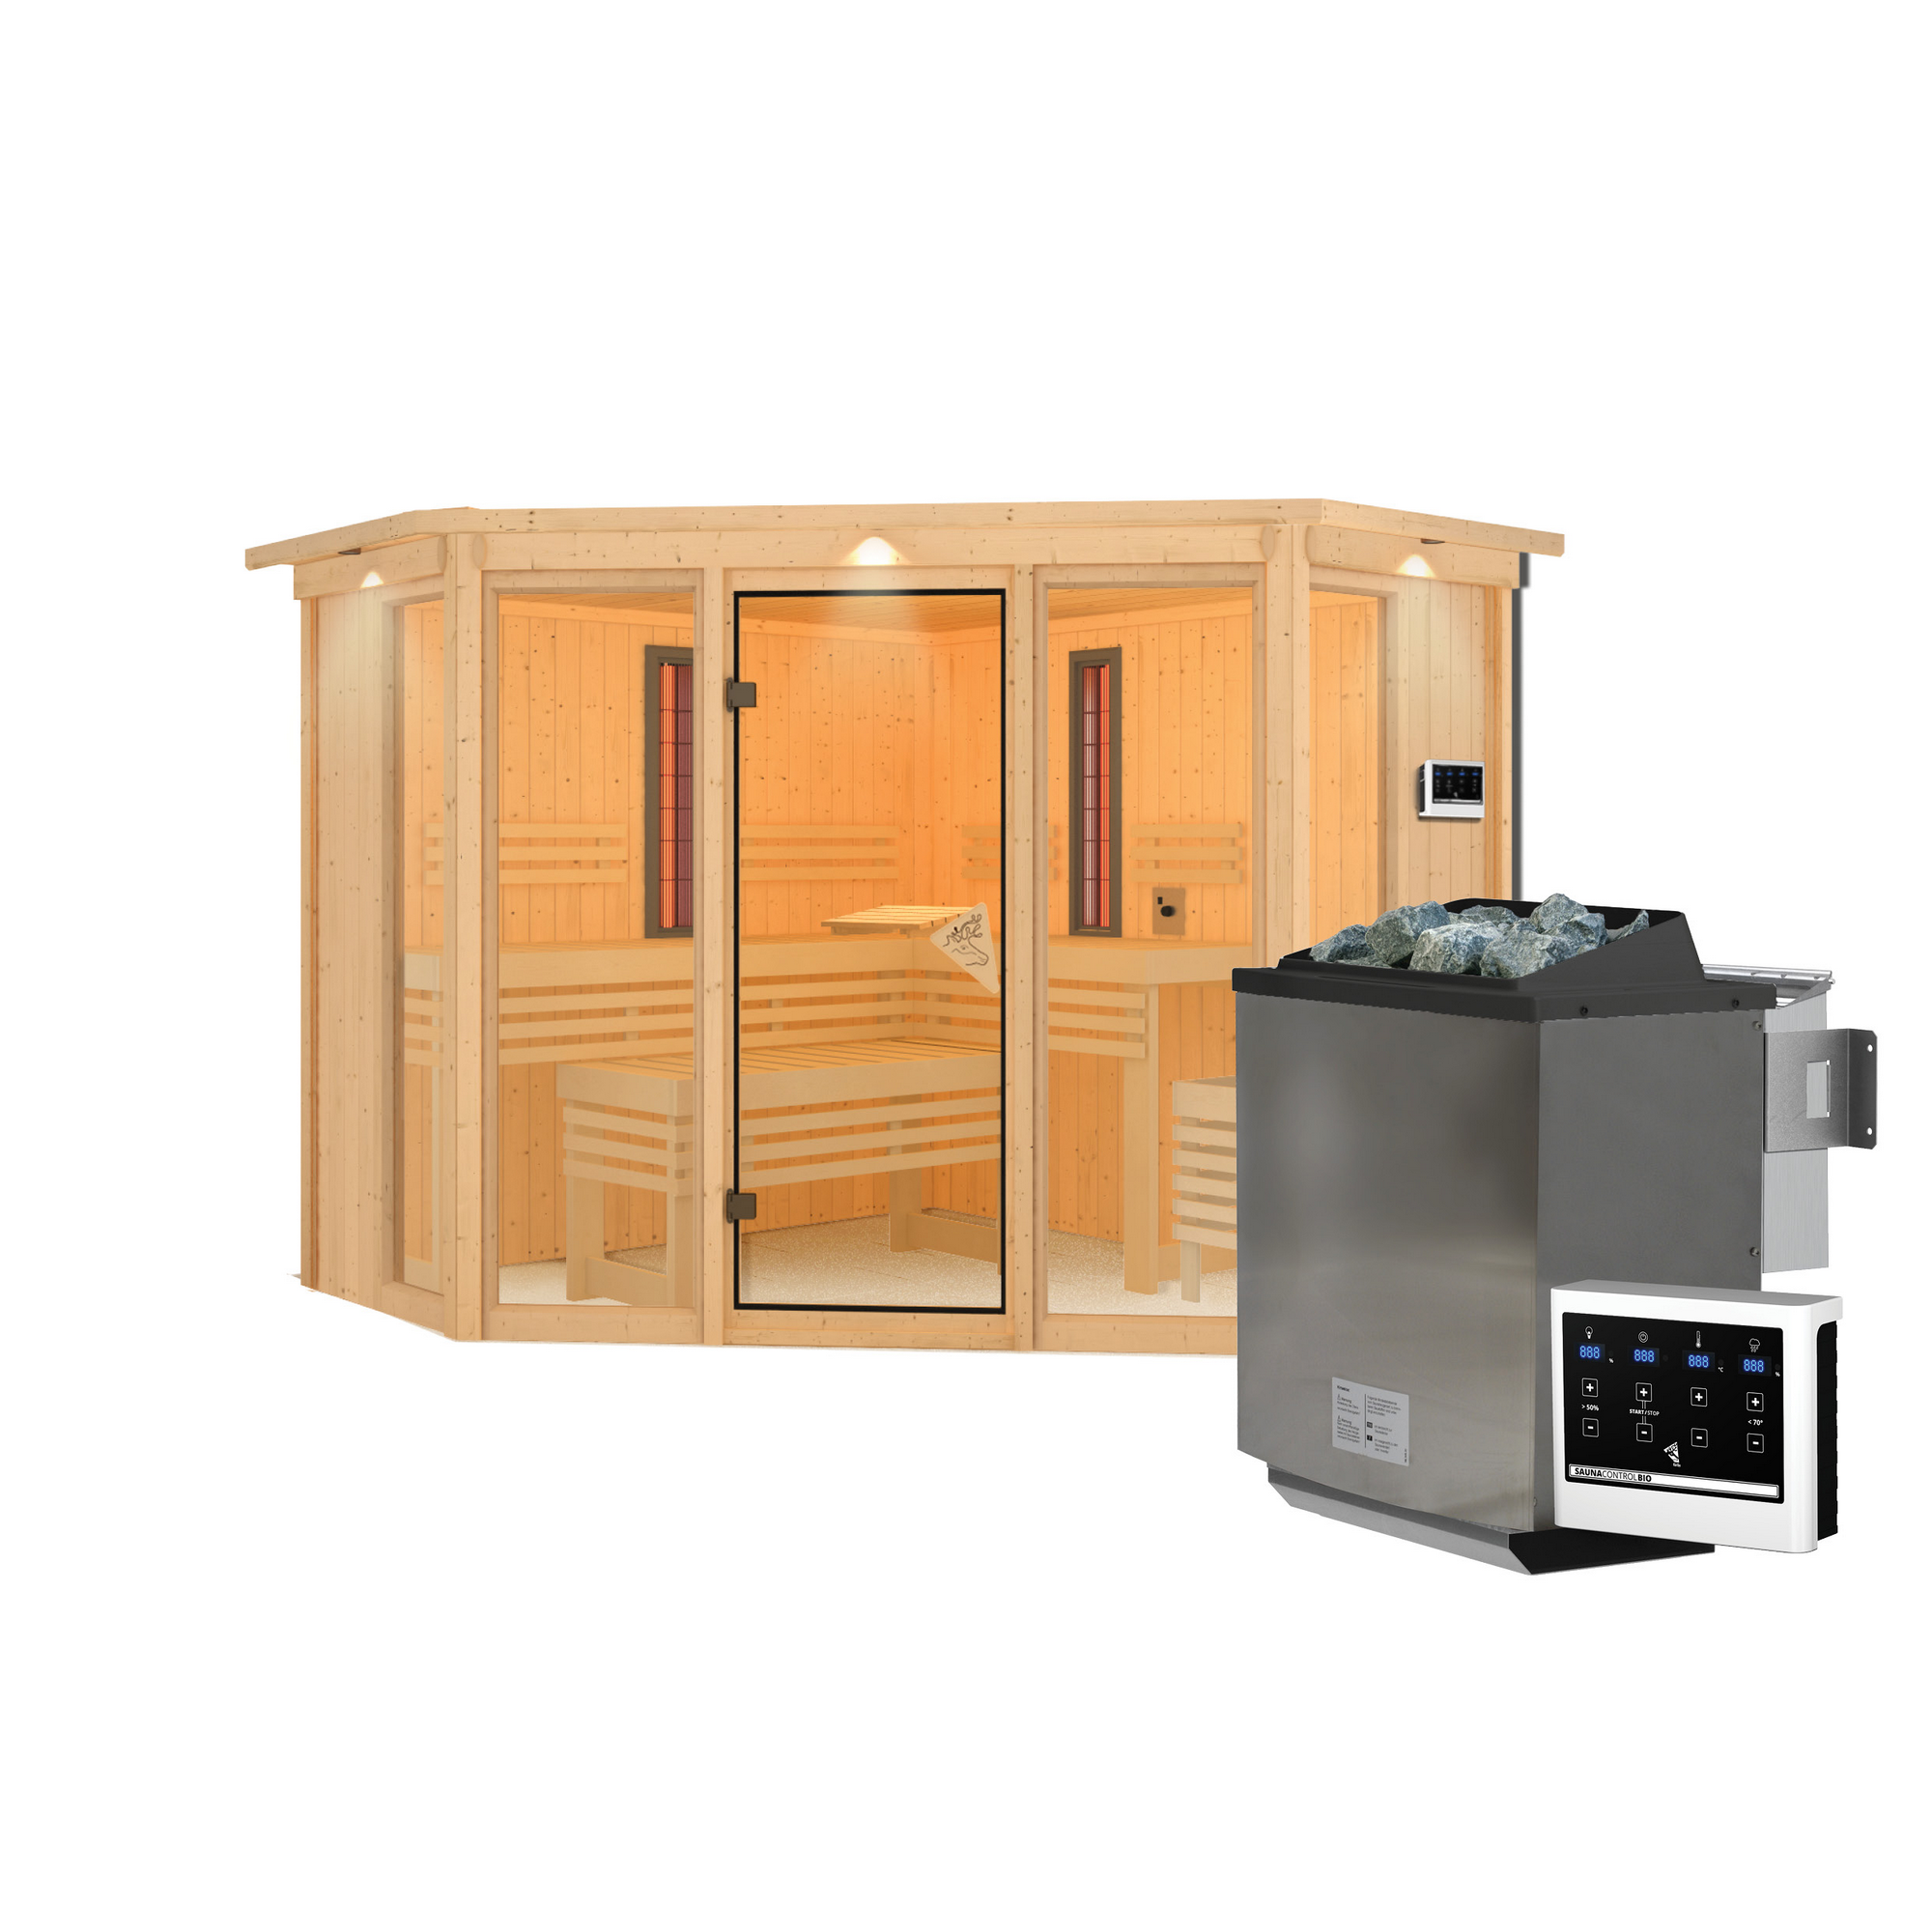 Infrarotkabine 'Aya' naturbelassen mit Kranz und bronzierter Tür 9 kW Bio-Ofen externe Steuerung 245 x 245 x 202 cm + product picture